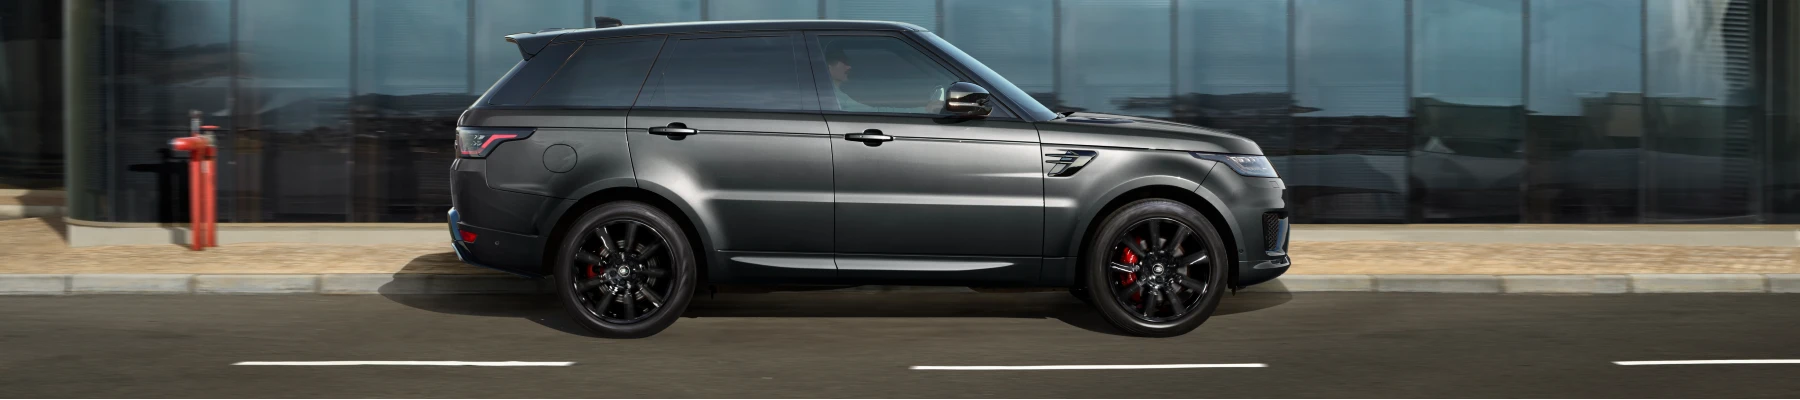 El Range Rover Sport PHEV es el coche híbrido eléctrico con más autonomía